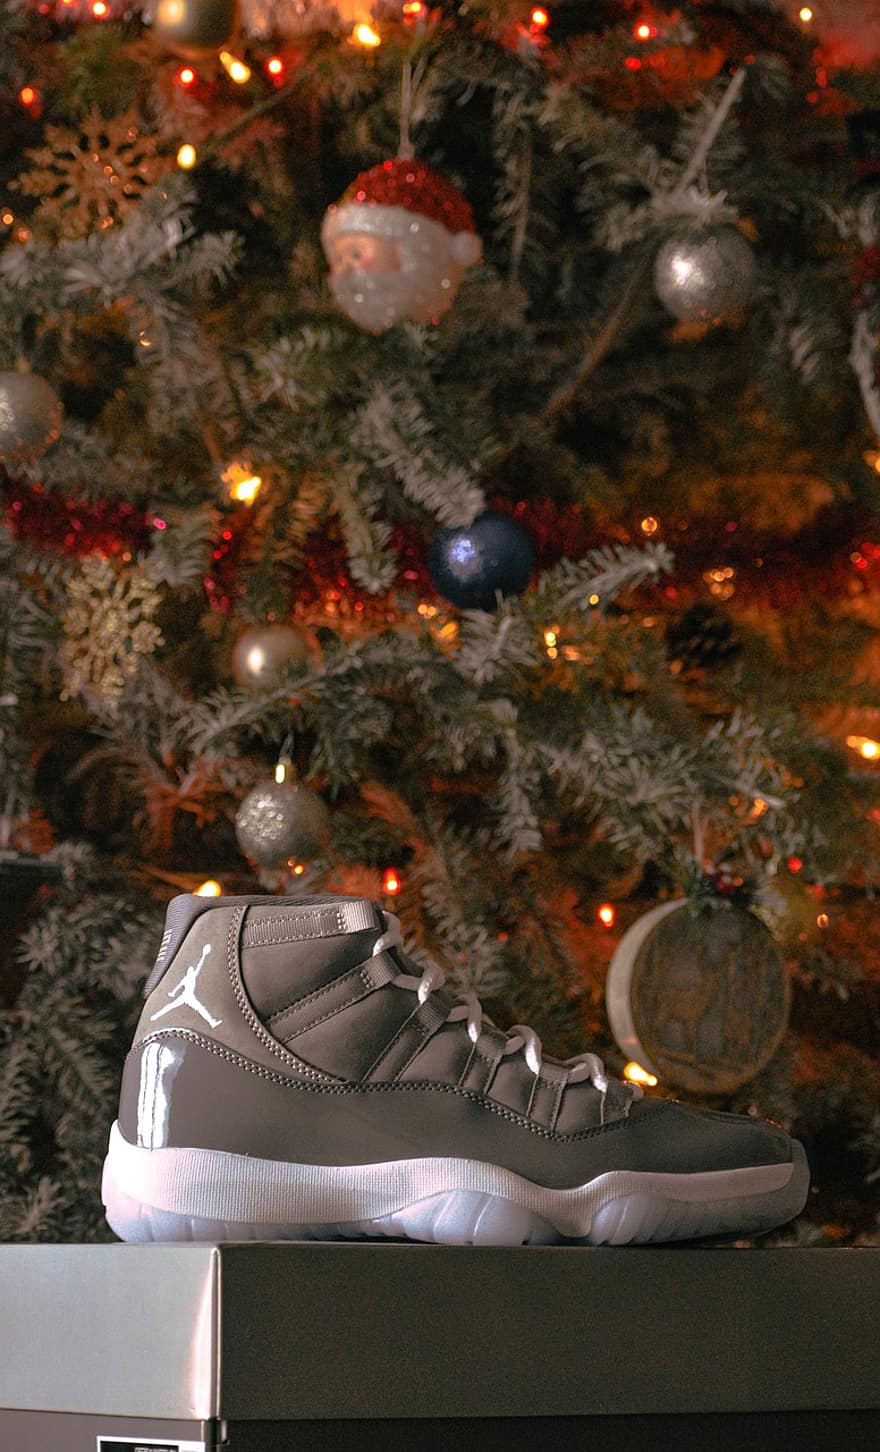 cipő, Karácsony, divat, tapéta, lockscreen, Jordan